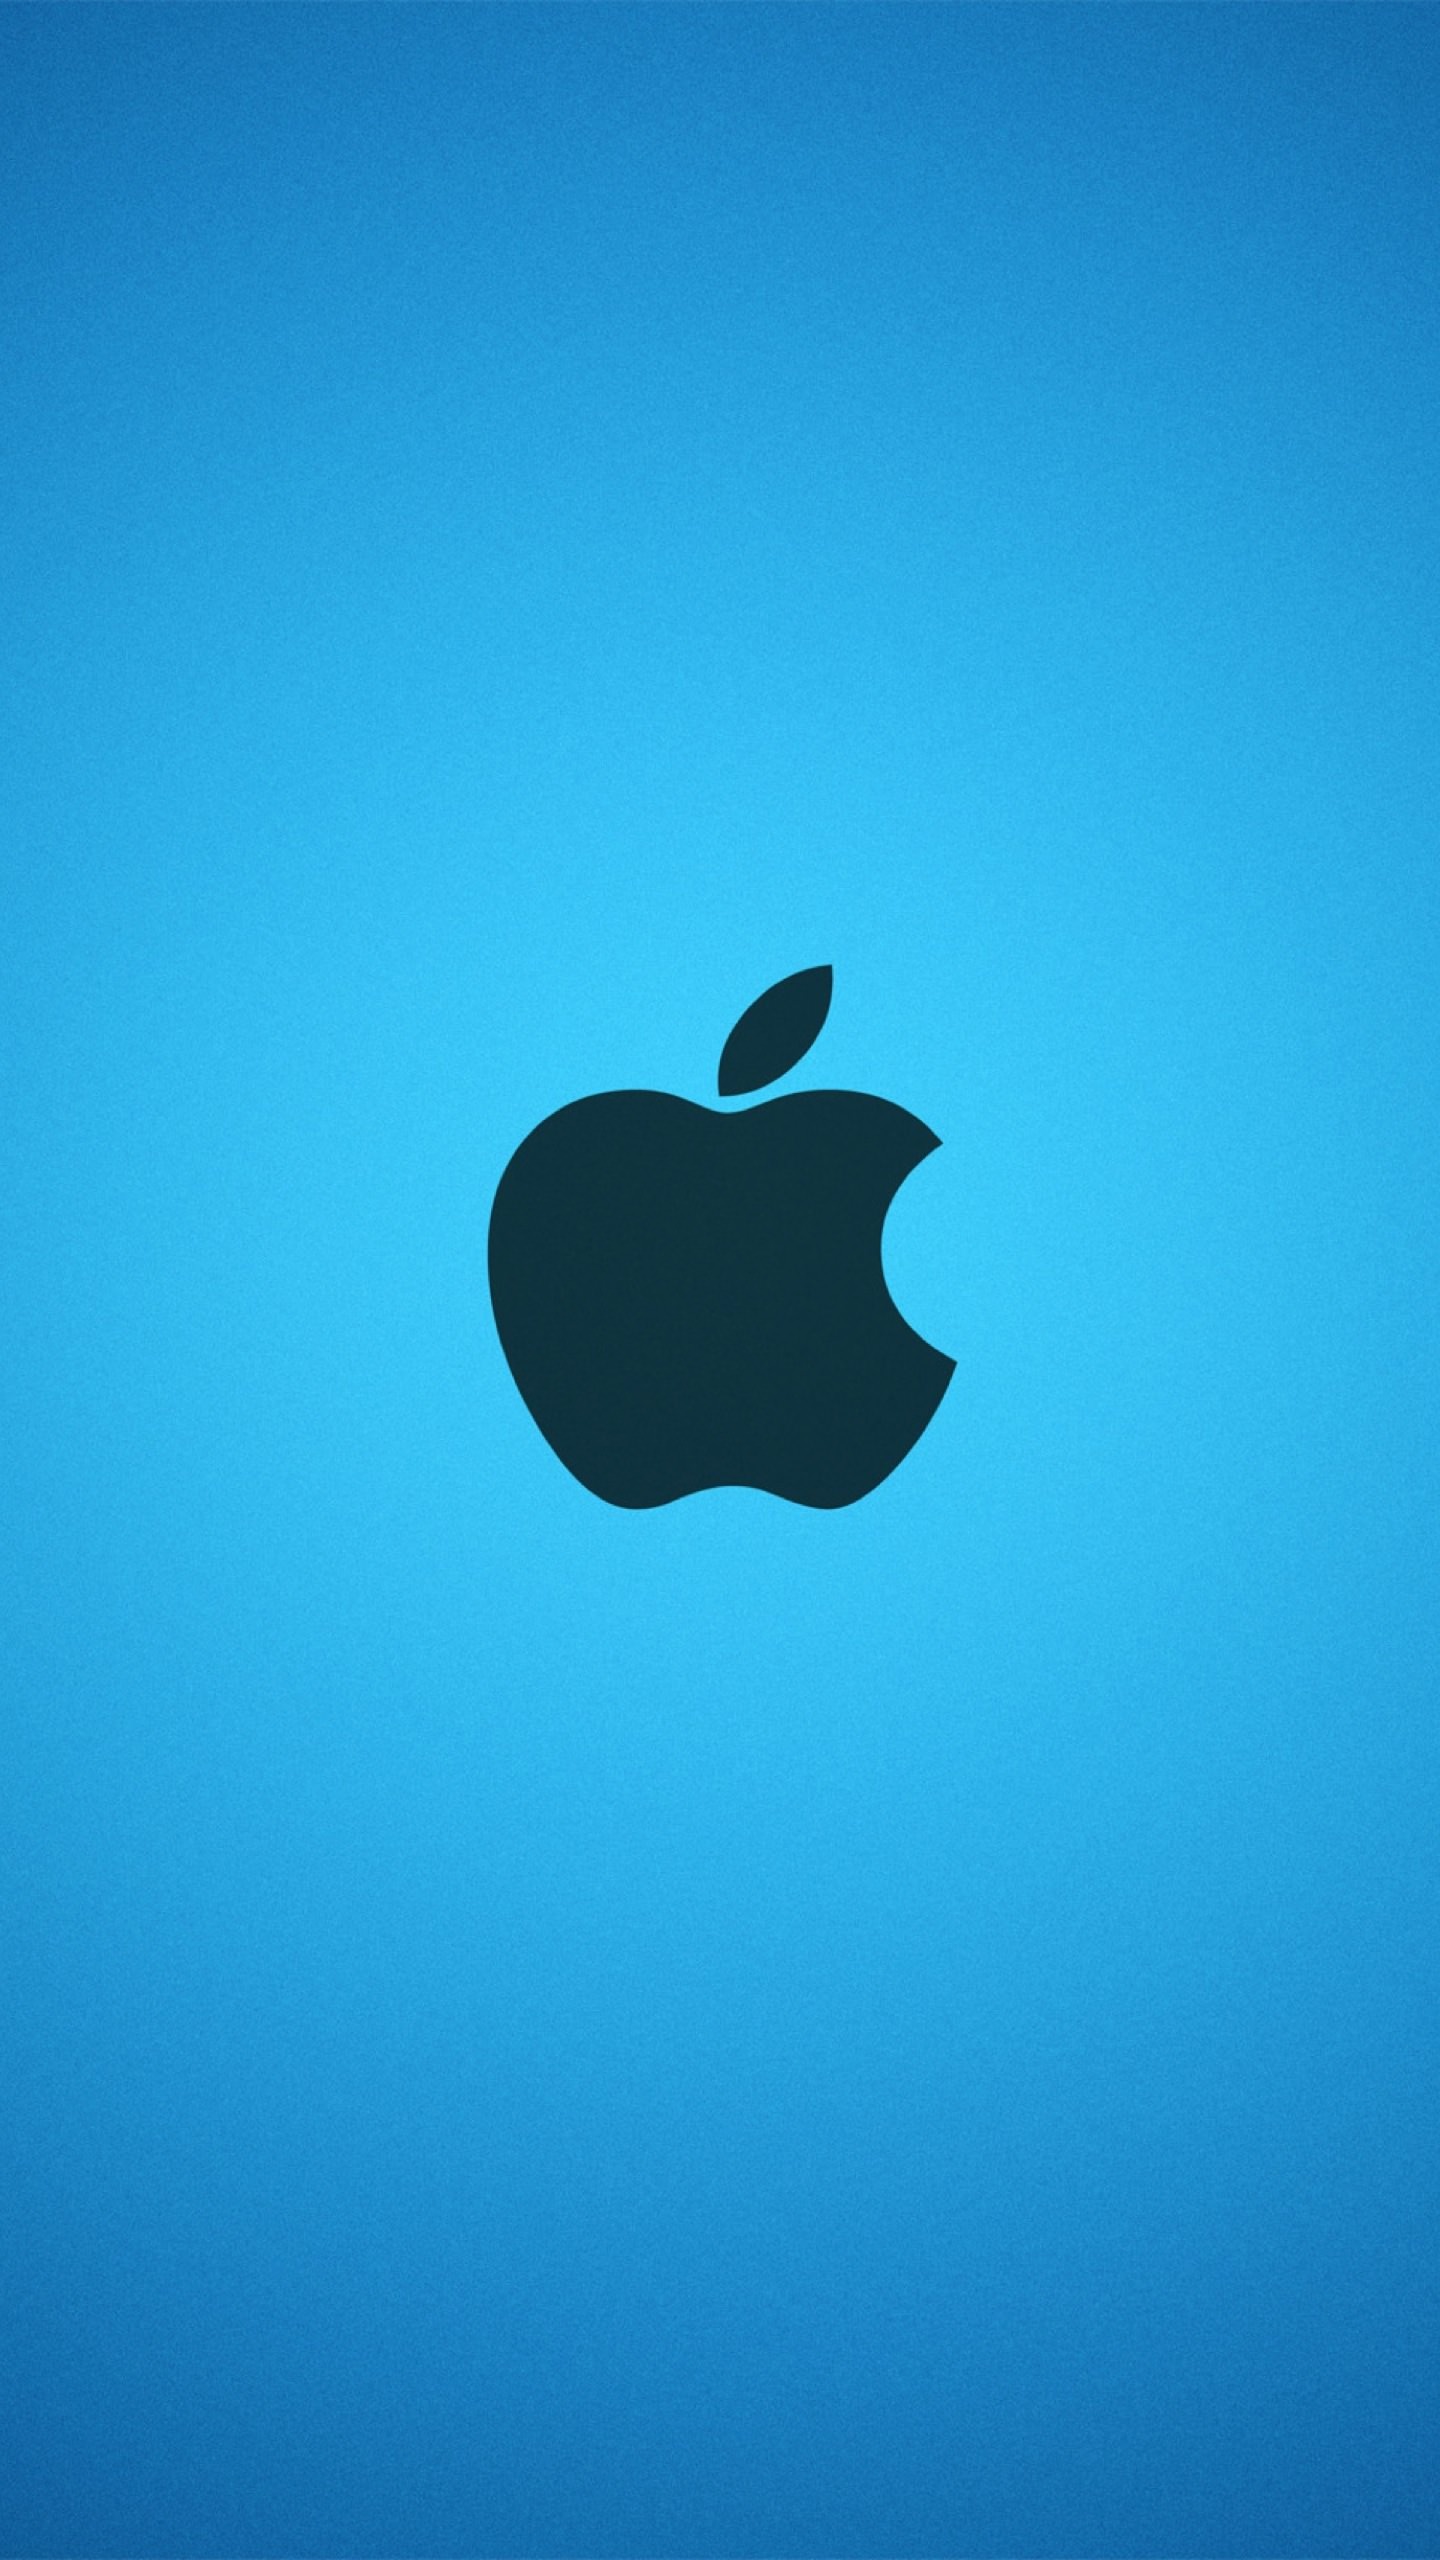 Найти картинку айфона. Обои на айфон. Логотип Apple. Заставка на айфон высокого качества. Красивые картинки на айфон.